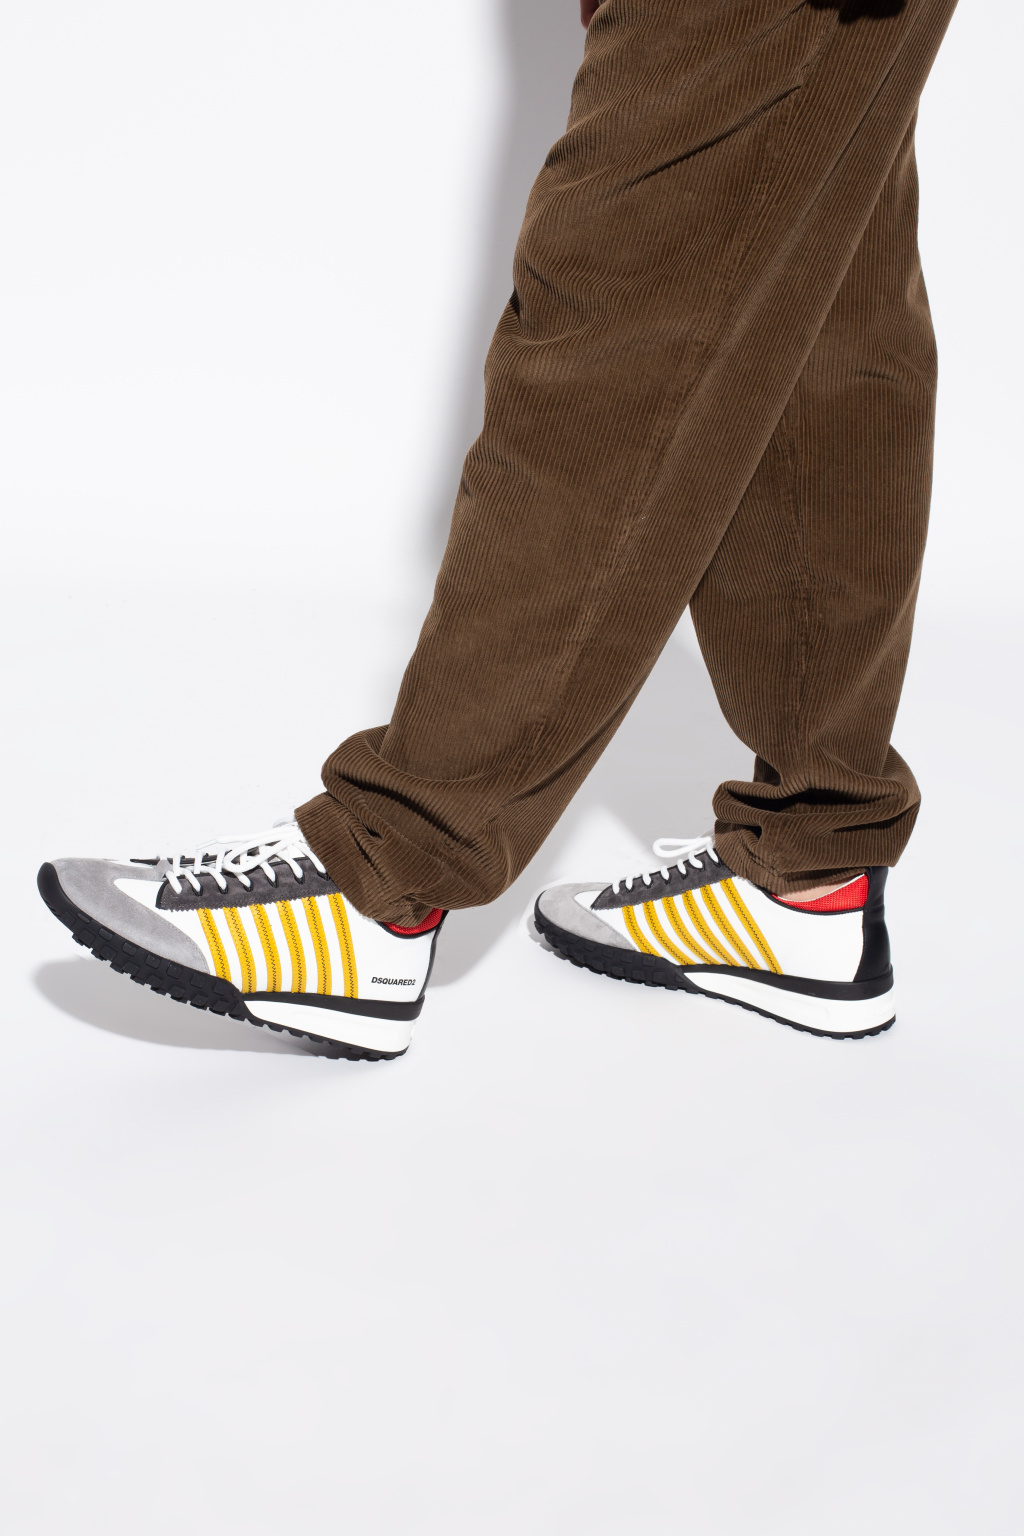 Dsquared2 'Legend' sneakers | Men's Shoes | Vitkac